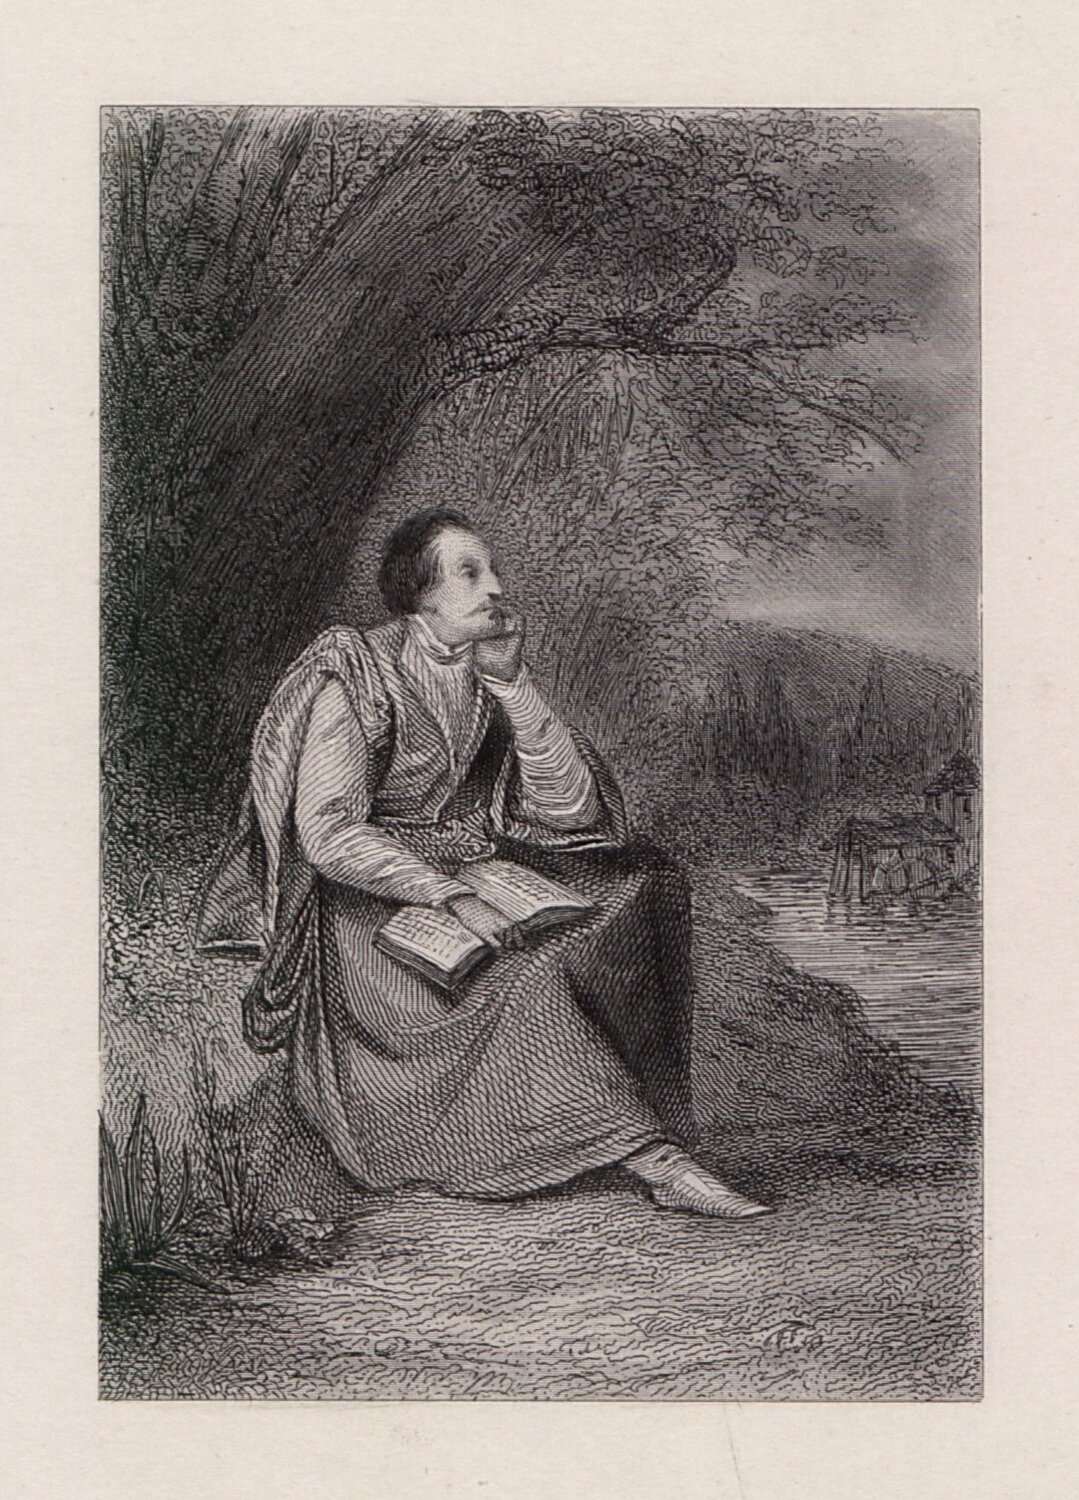 Jan Kochanowski w Czarnolesie Źródło: Antoni Oleszczyński, Jan Kochanowski w Czarnolesie, 1842, staloryt, domena publiczna.